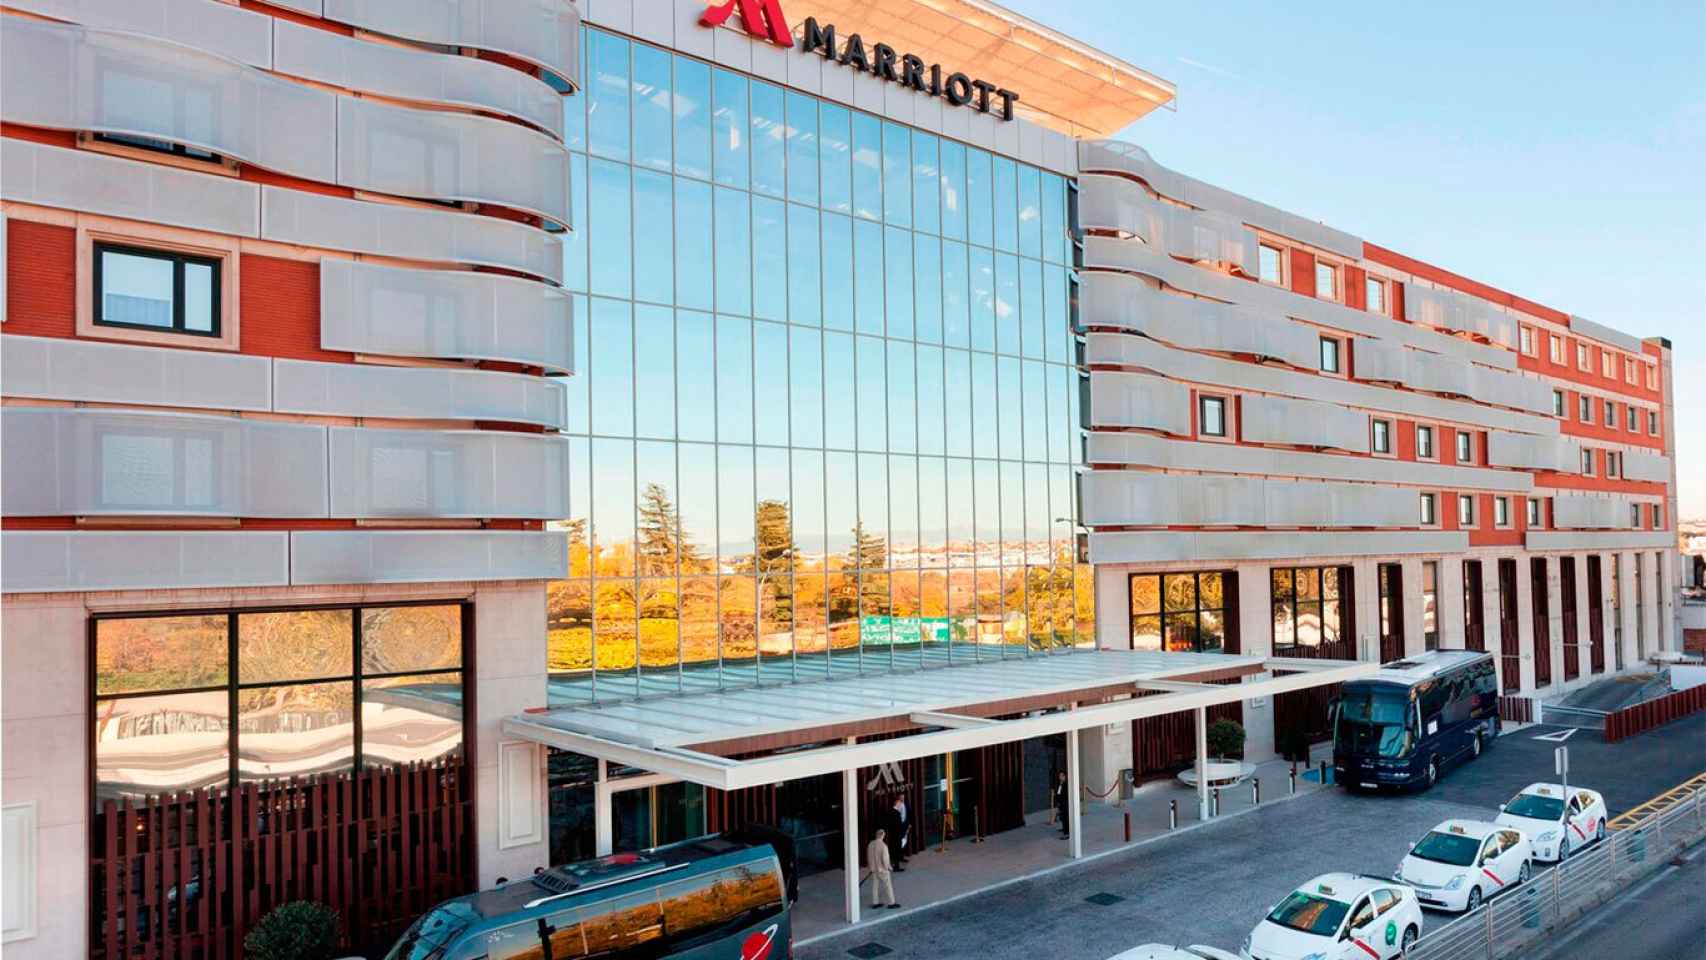 Hoteles Marriott darán alojamiento gratis al personal médico | Mercados